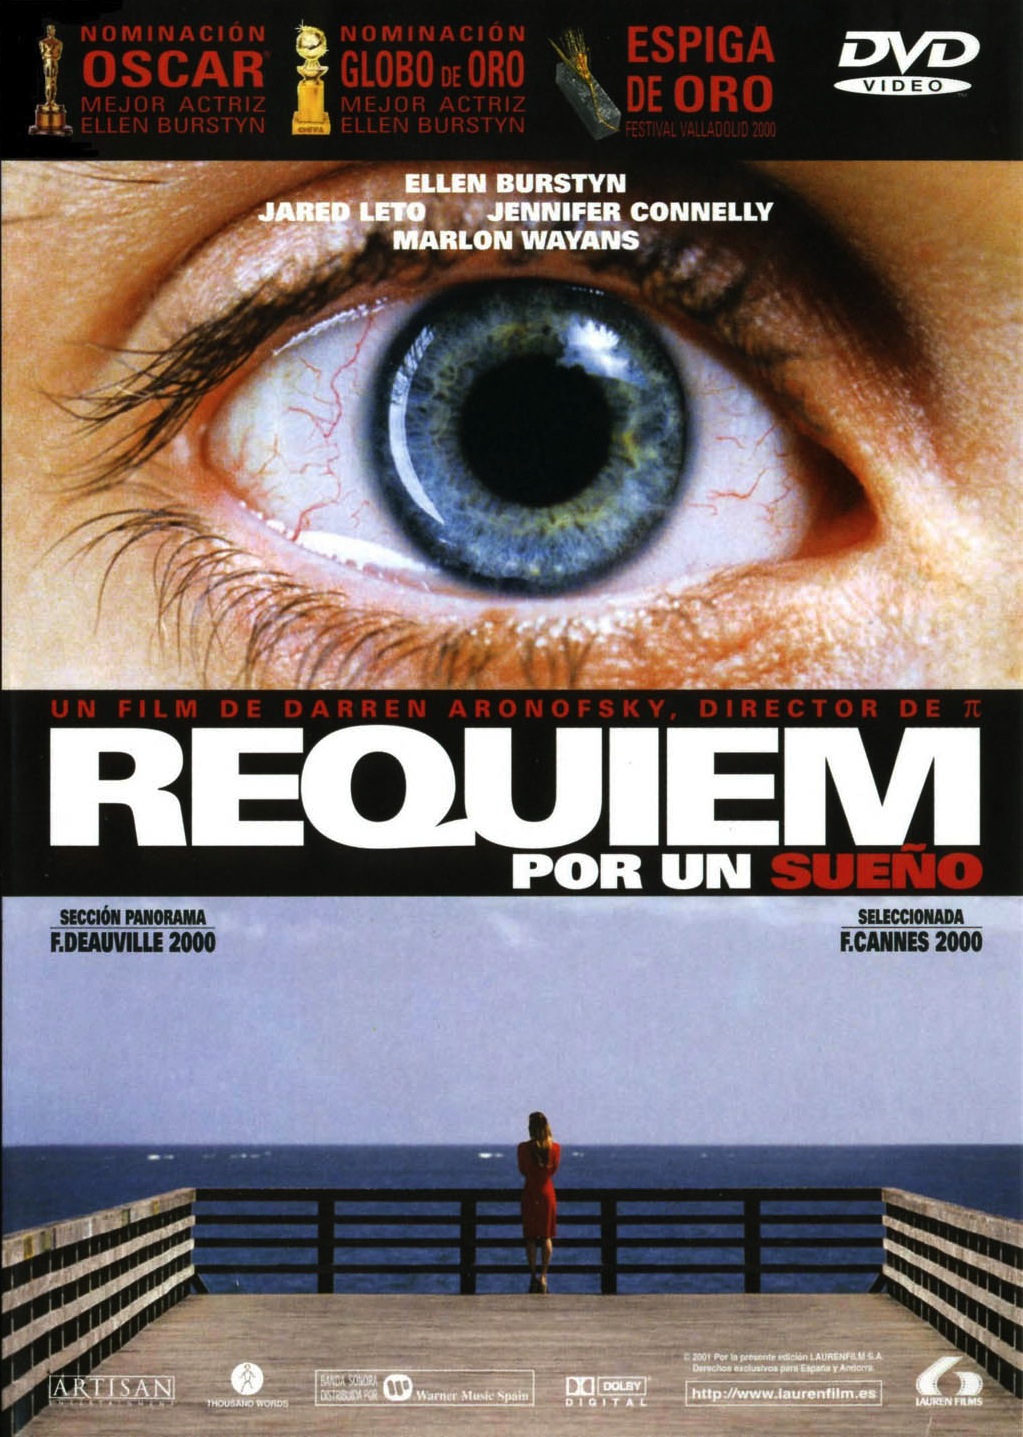 [Post Oficial] Películas que vamos viendo - Página 31 01-Requiem+por+un+sue%C3%B1o